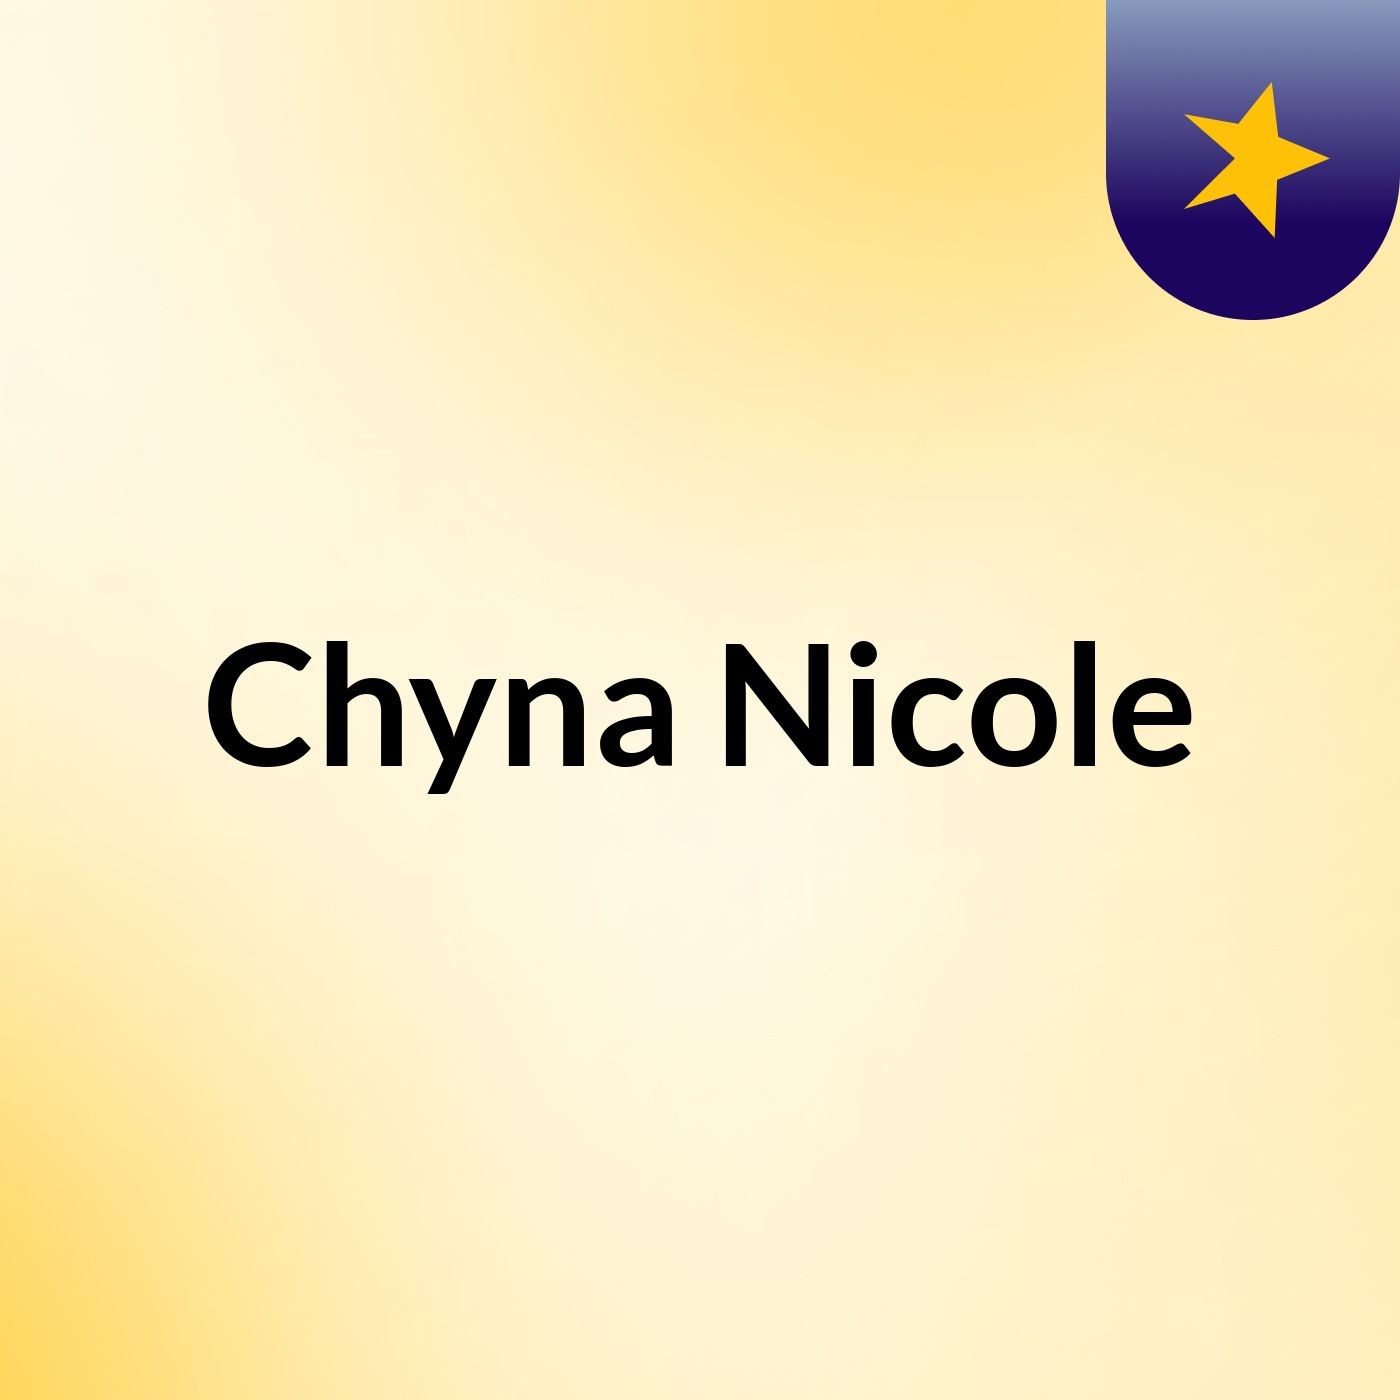 Chyna Nicole